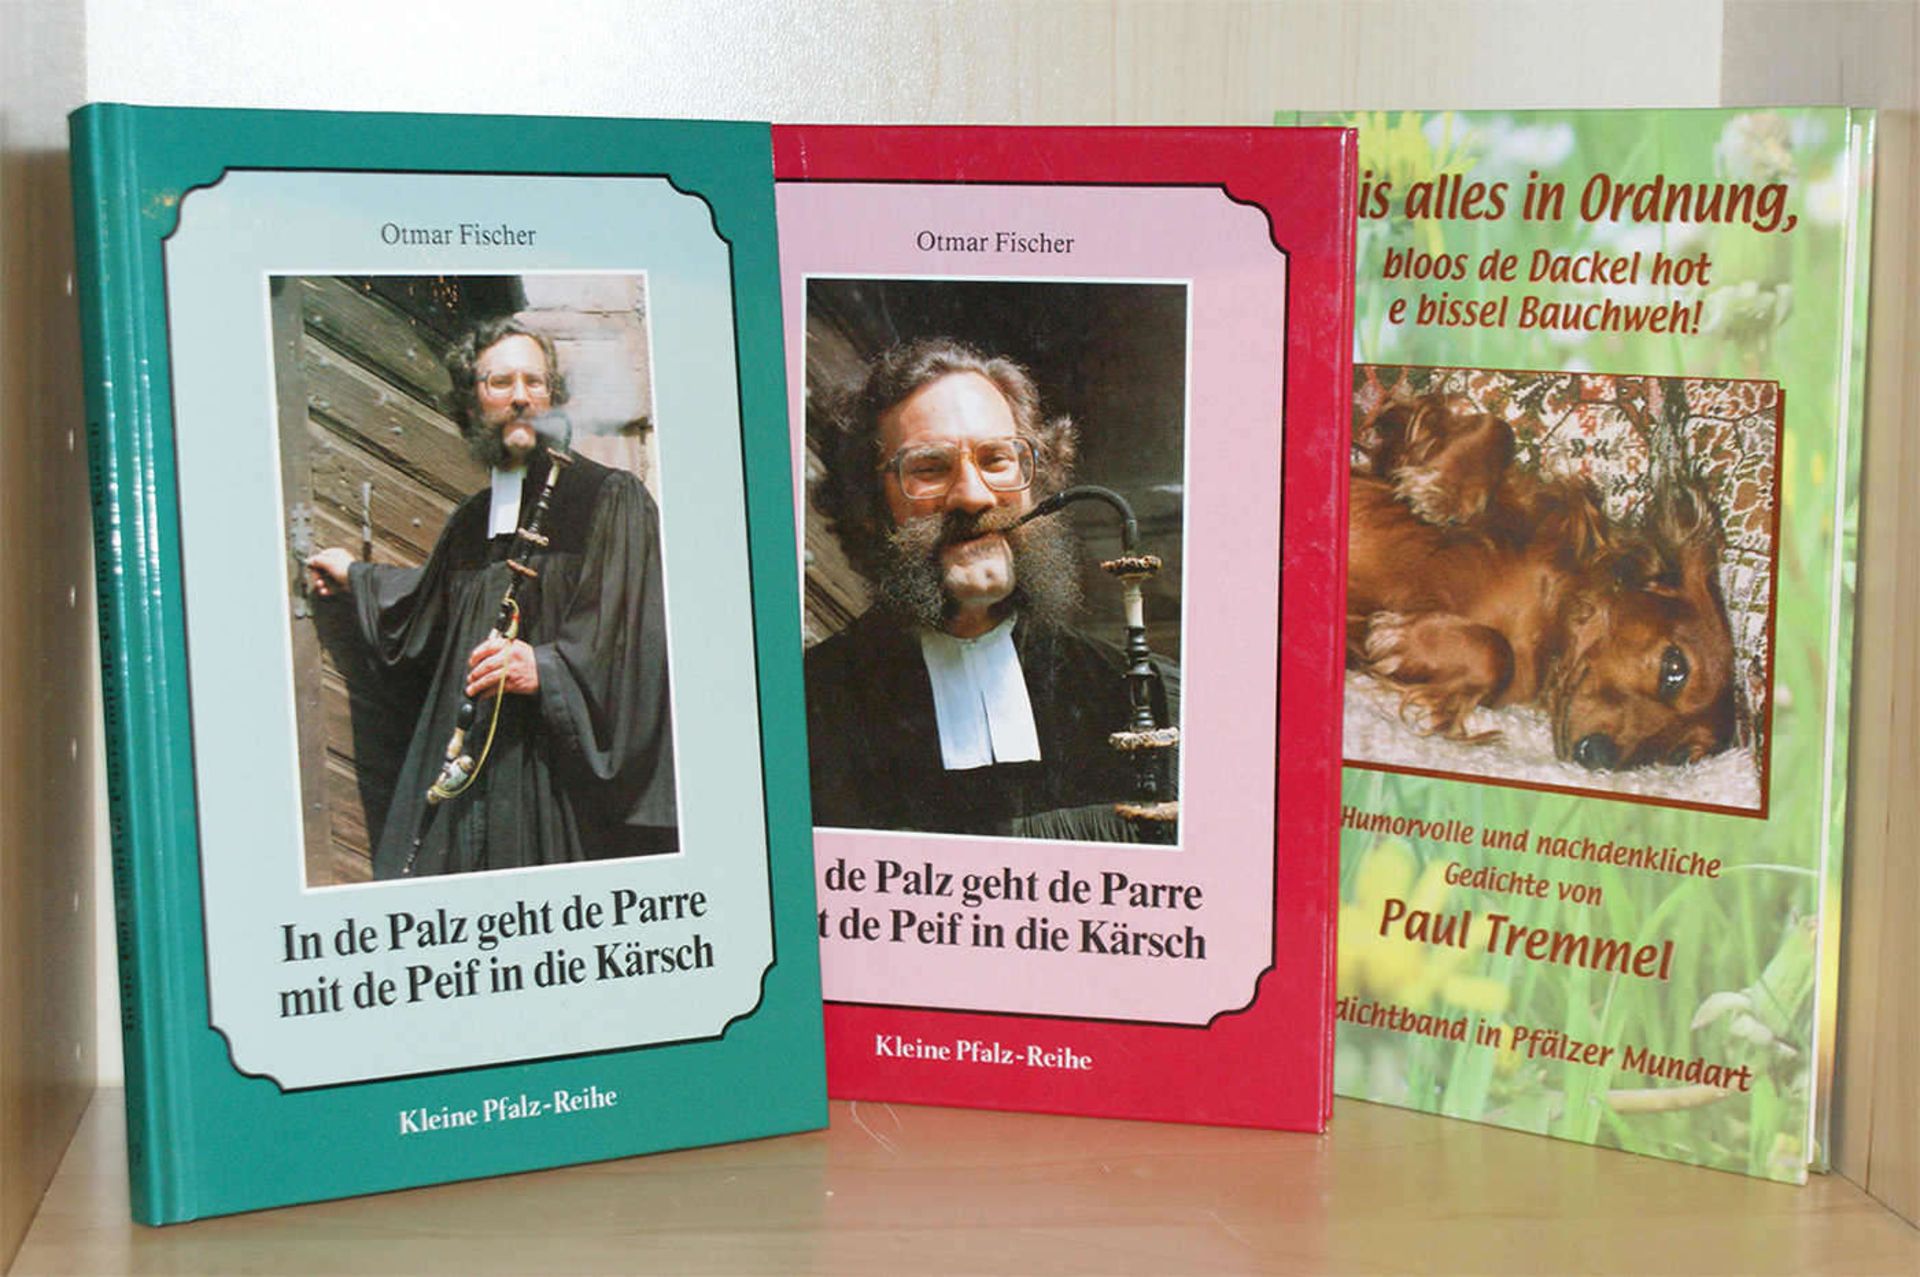 3x Pfälzer Literatur, handsigniert, 2x Ottmar Fischer, sowie 1x Paul Tremmel. Guter Zustand.